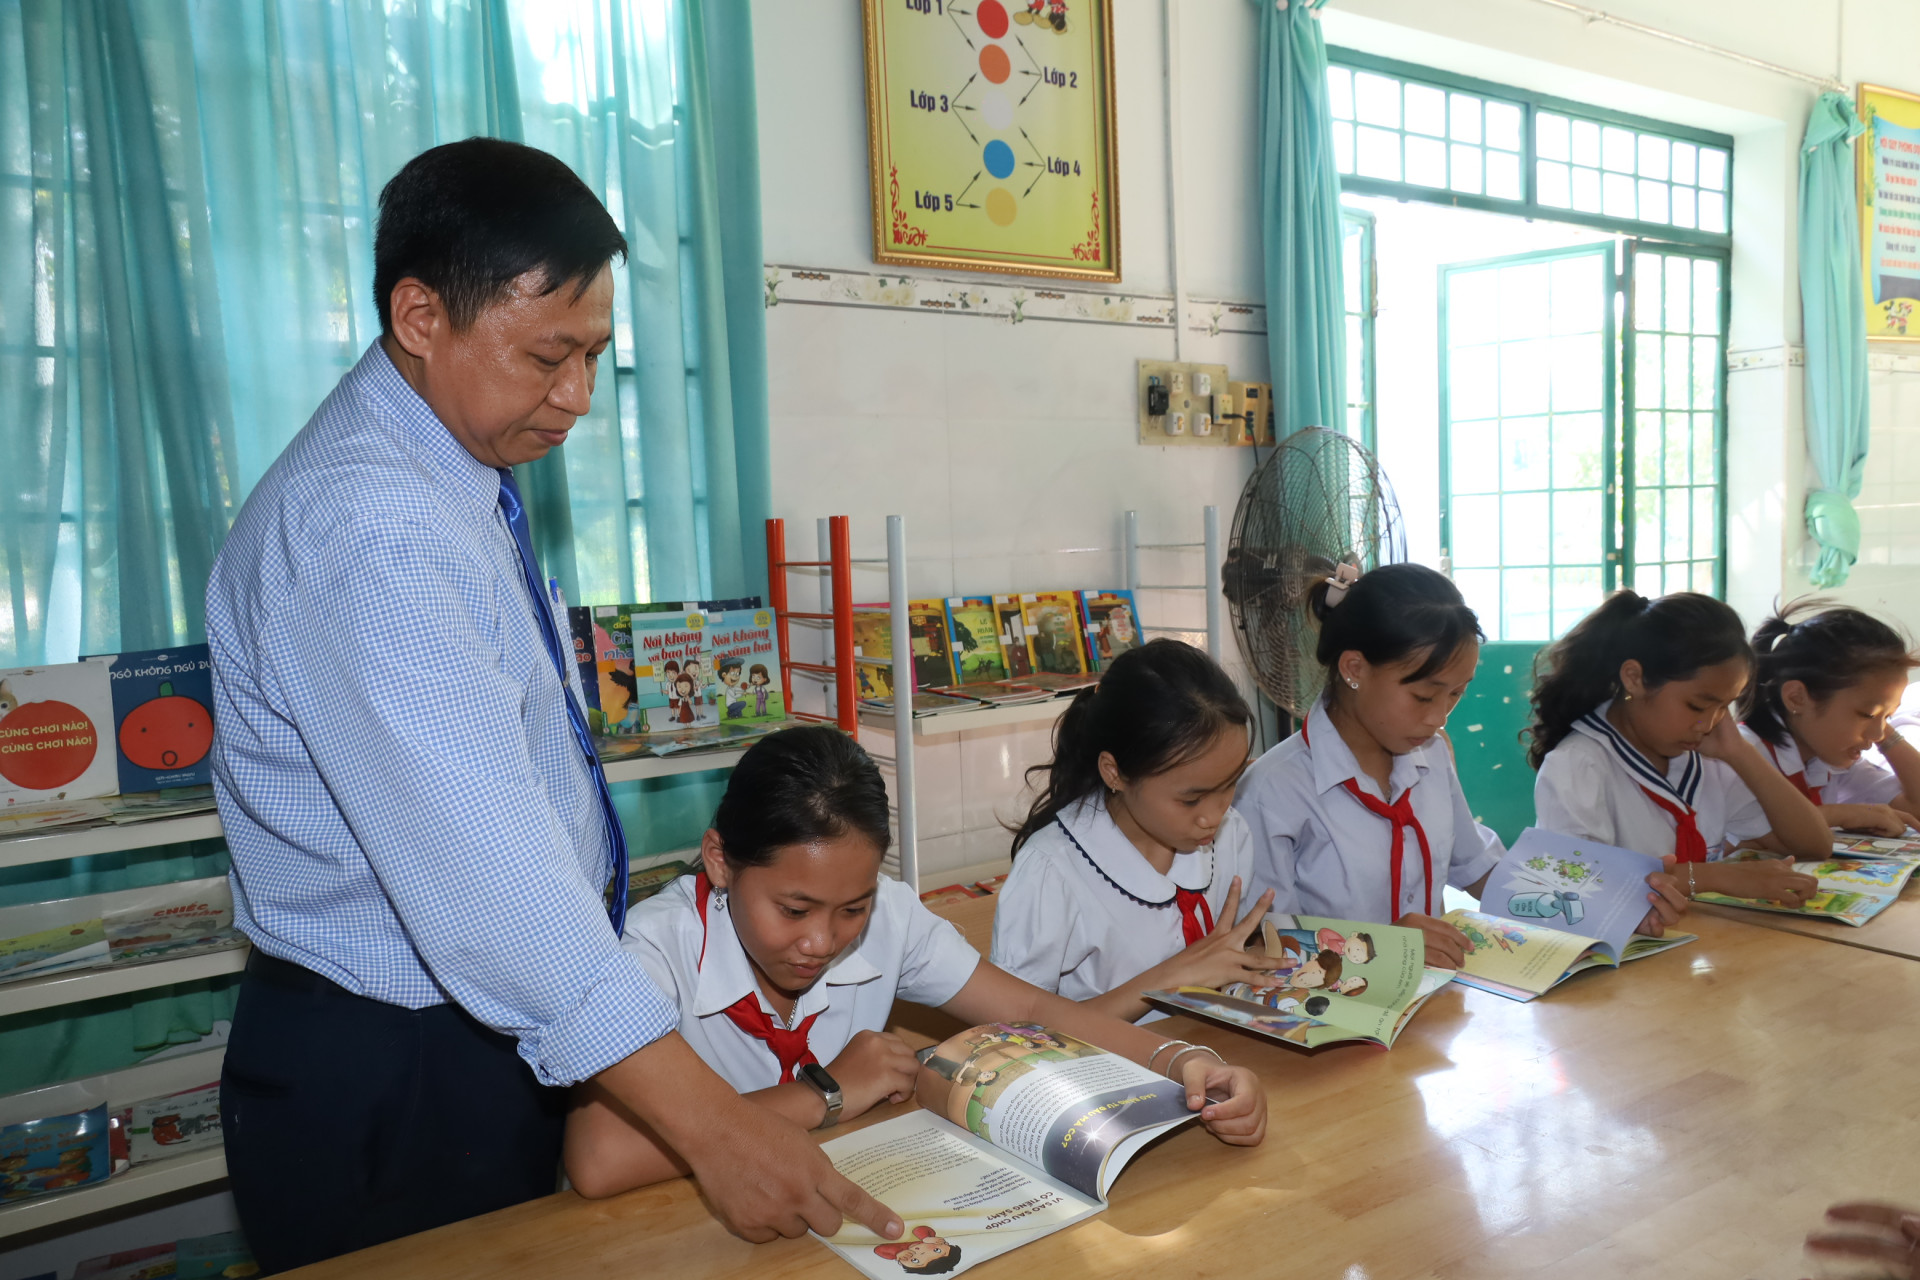 Ông Đỗ Chí Kiên hướng dẫn học sinh trong một buổi đọc sách tại thư viện trường.